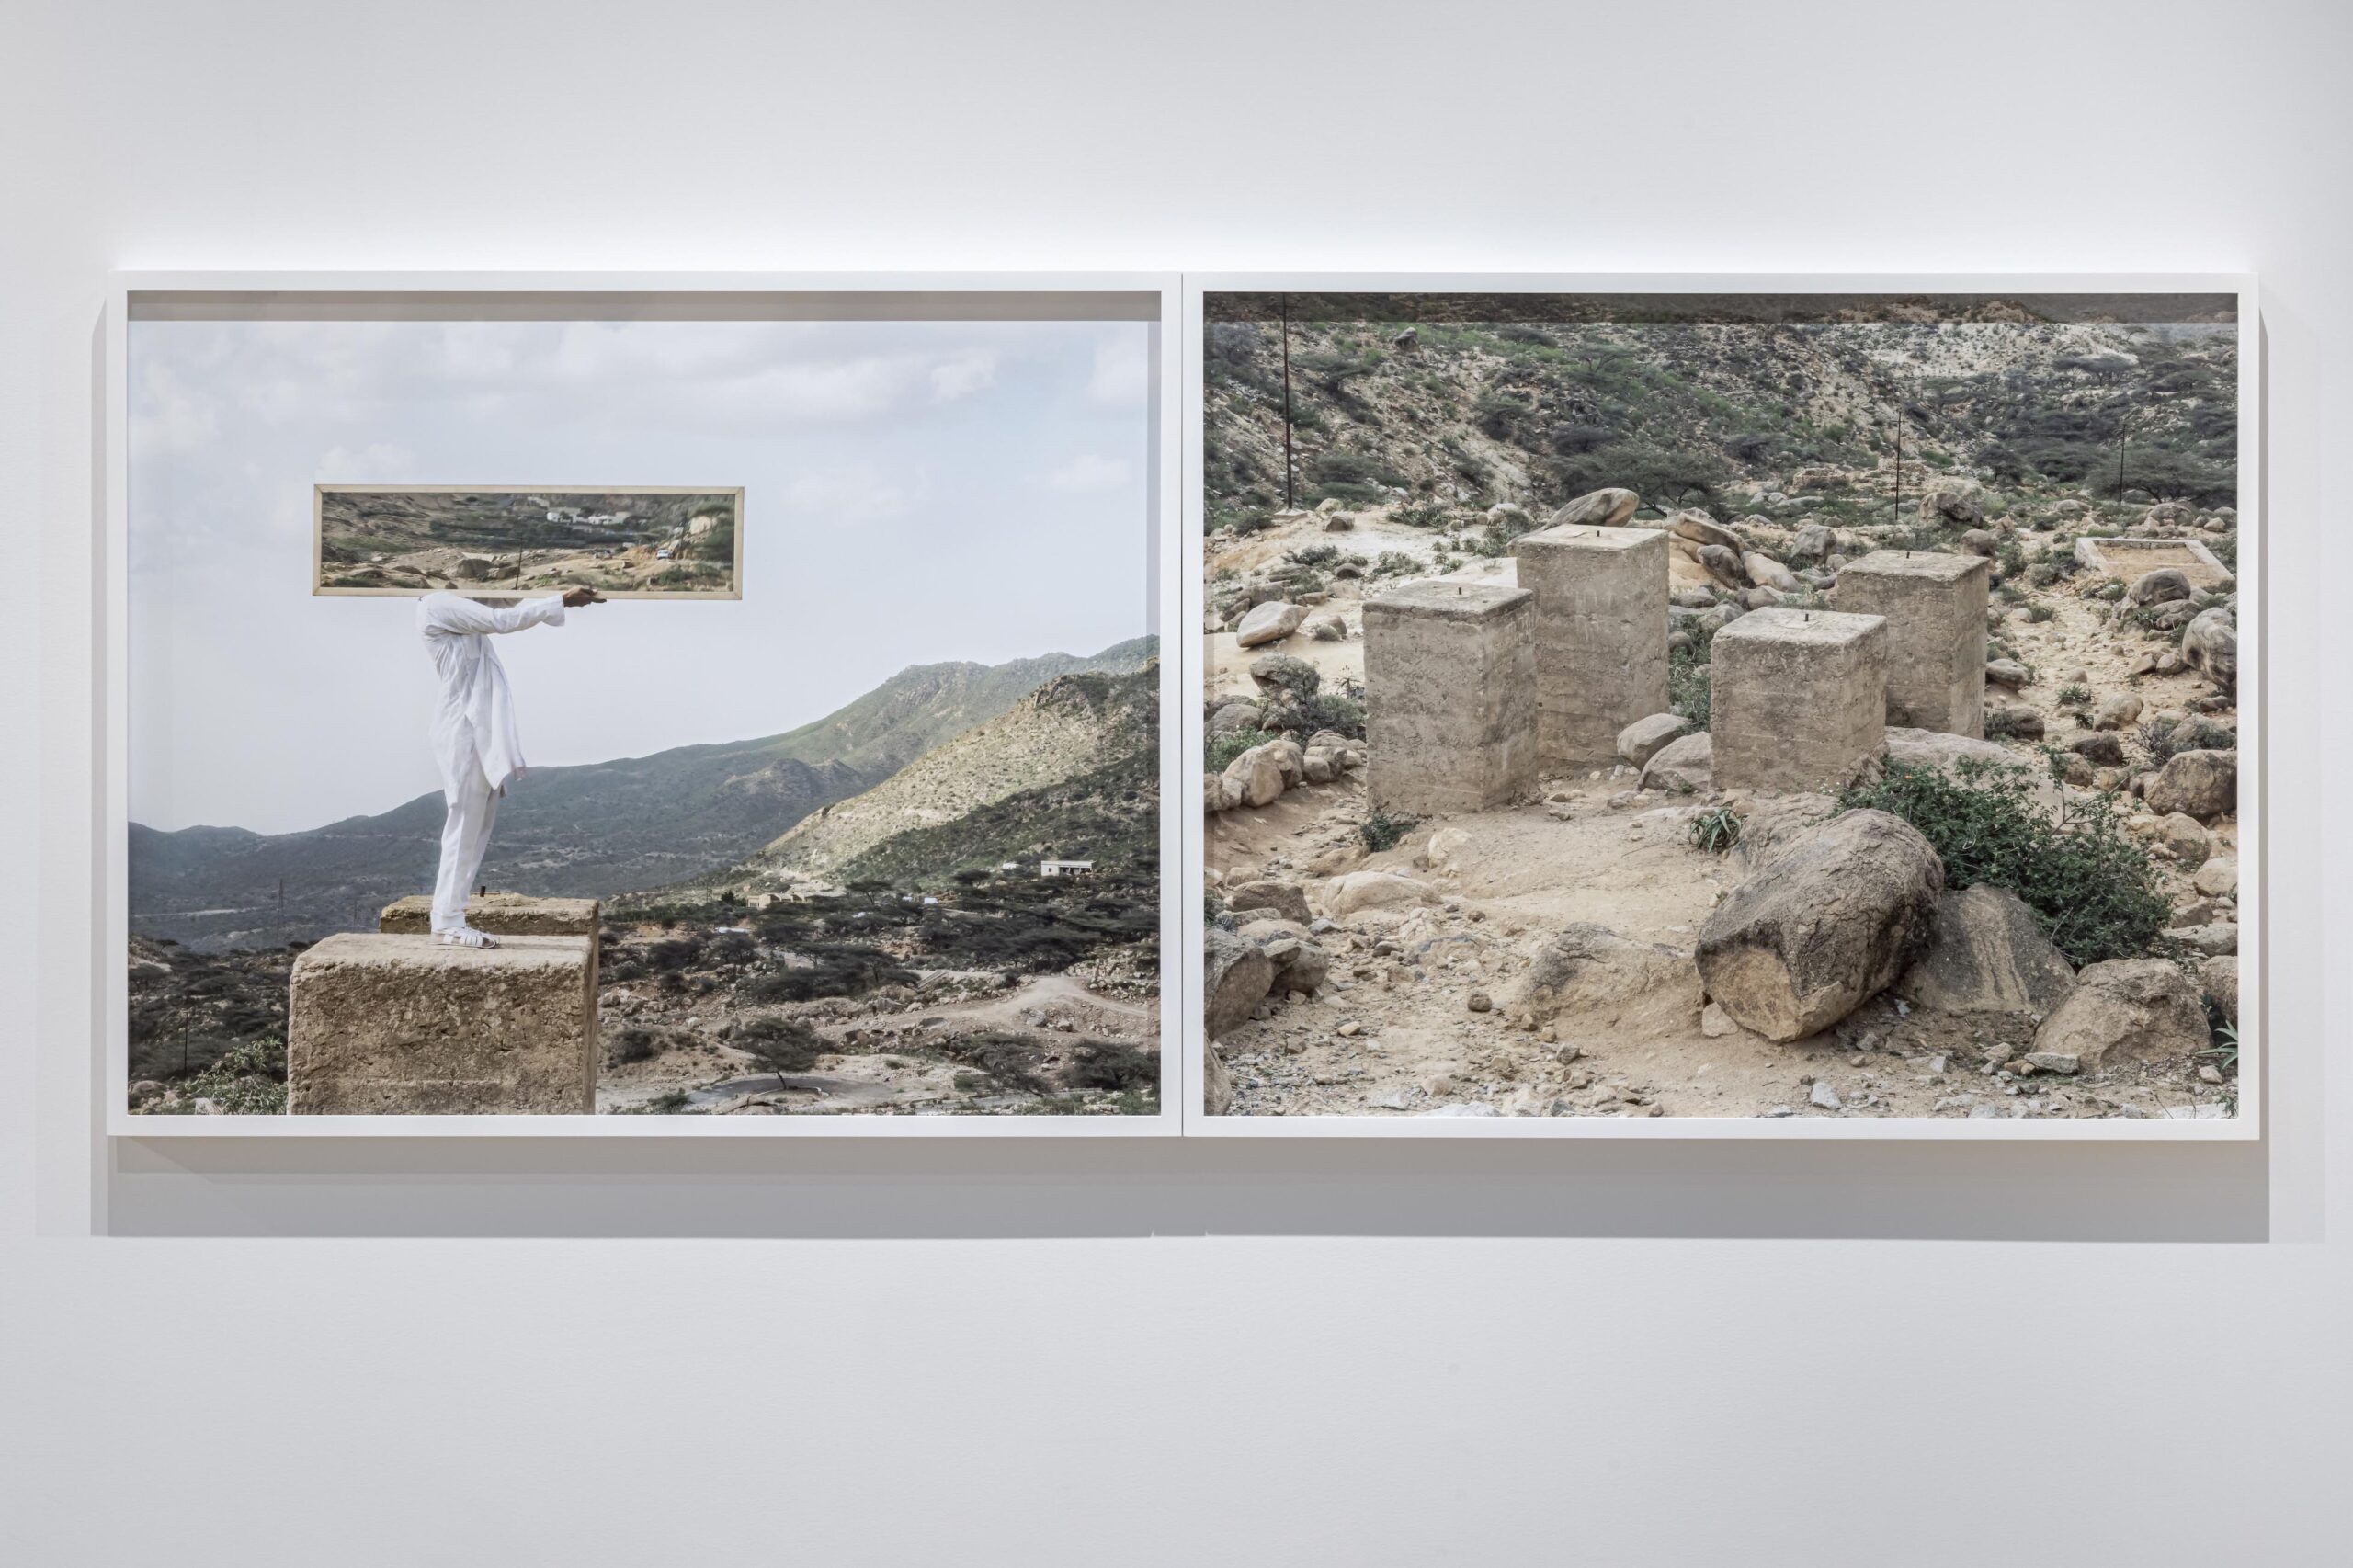 Gauche: Untitled (Epilogue IV), Nefasit, Eritrea, 2019